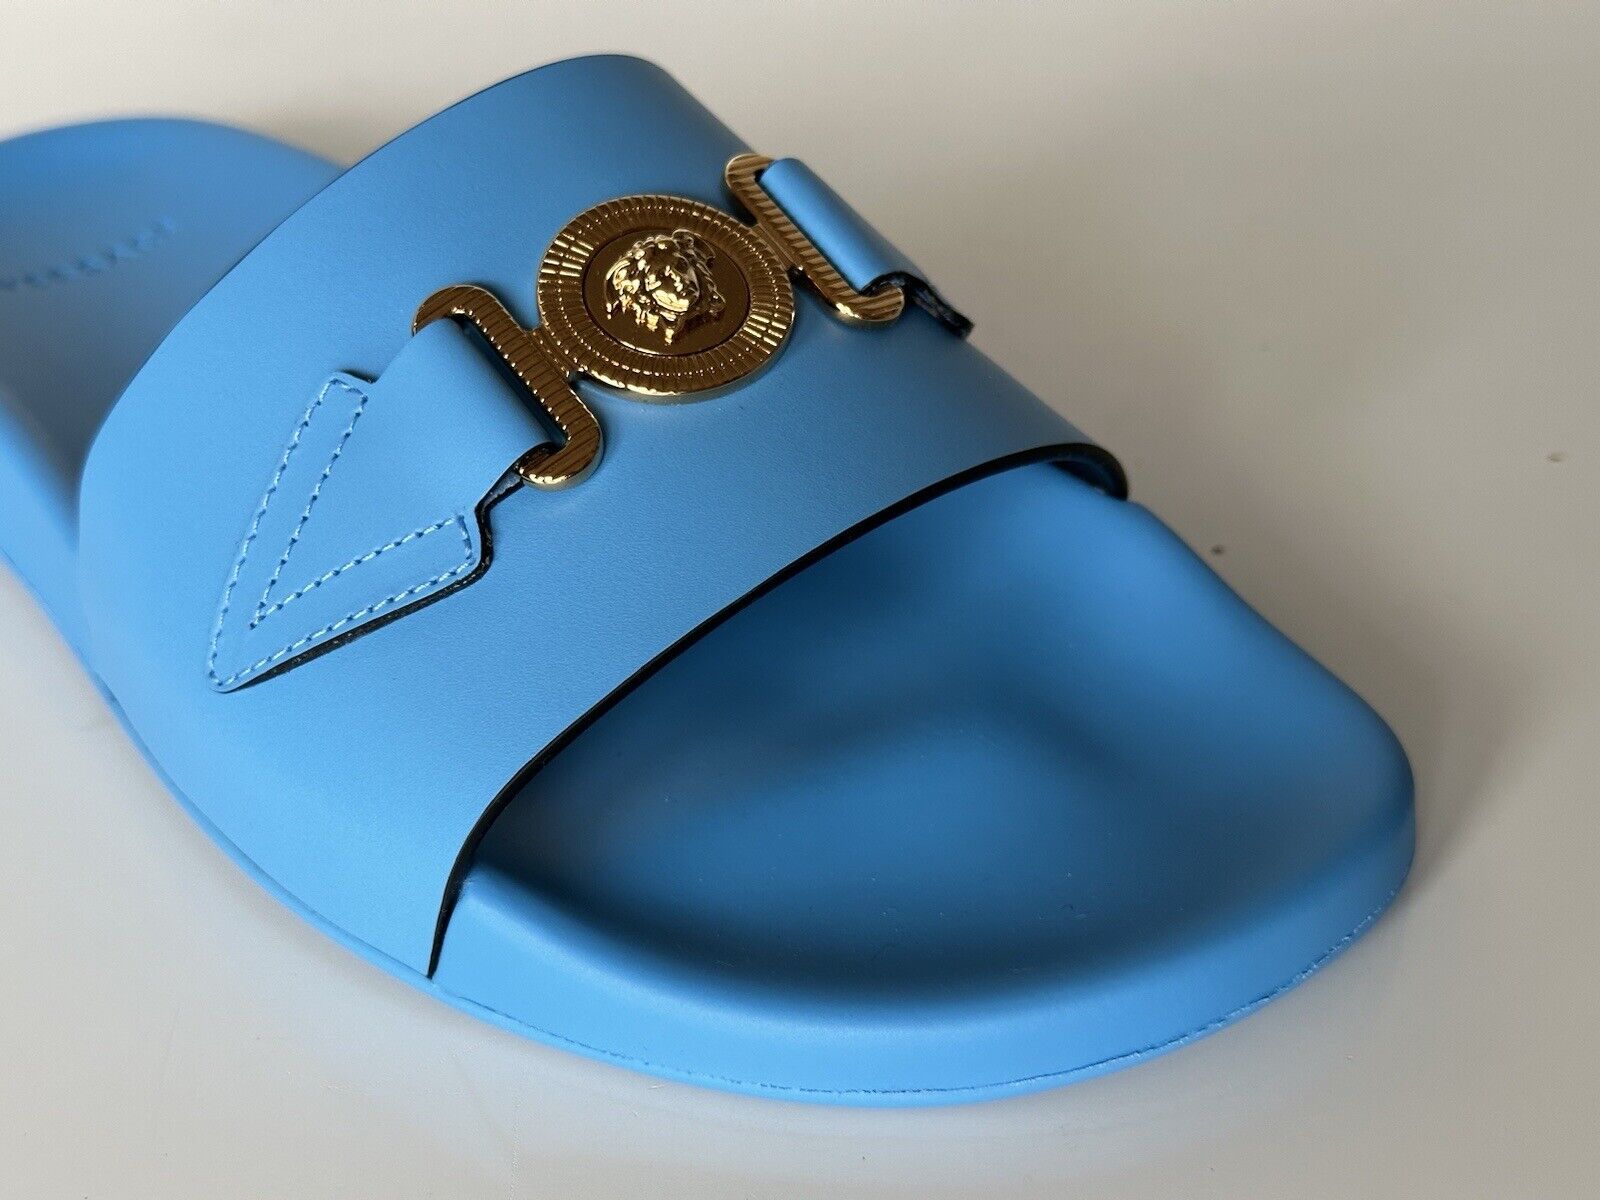 NIB 575 долларов США Versace Gold Medusa Кожаные/резиновые сандалии Синие 10 США (43) 1004983 IT